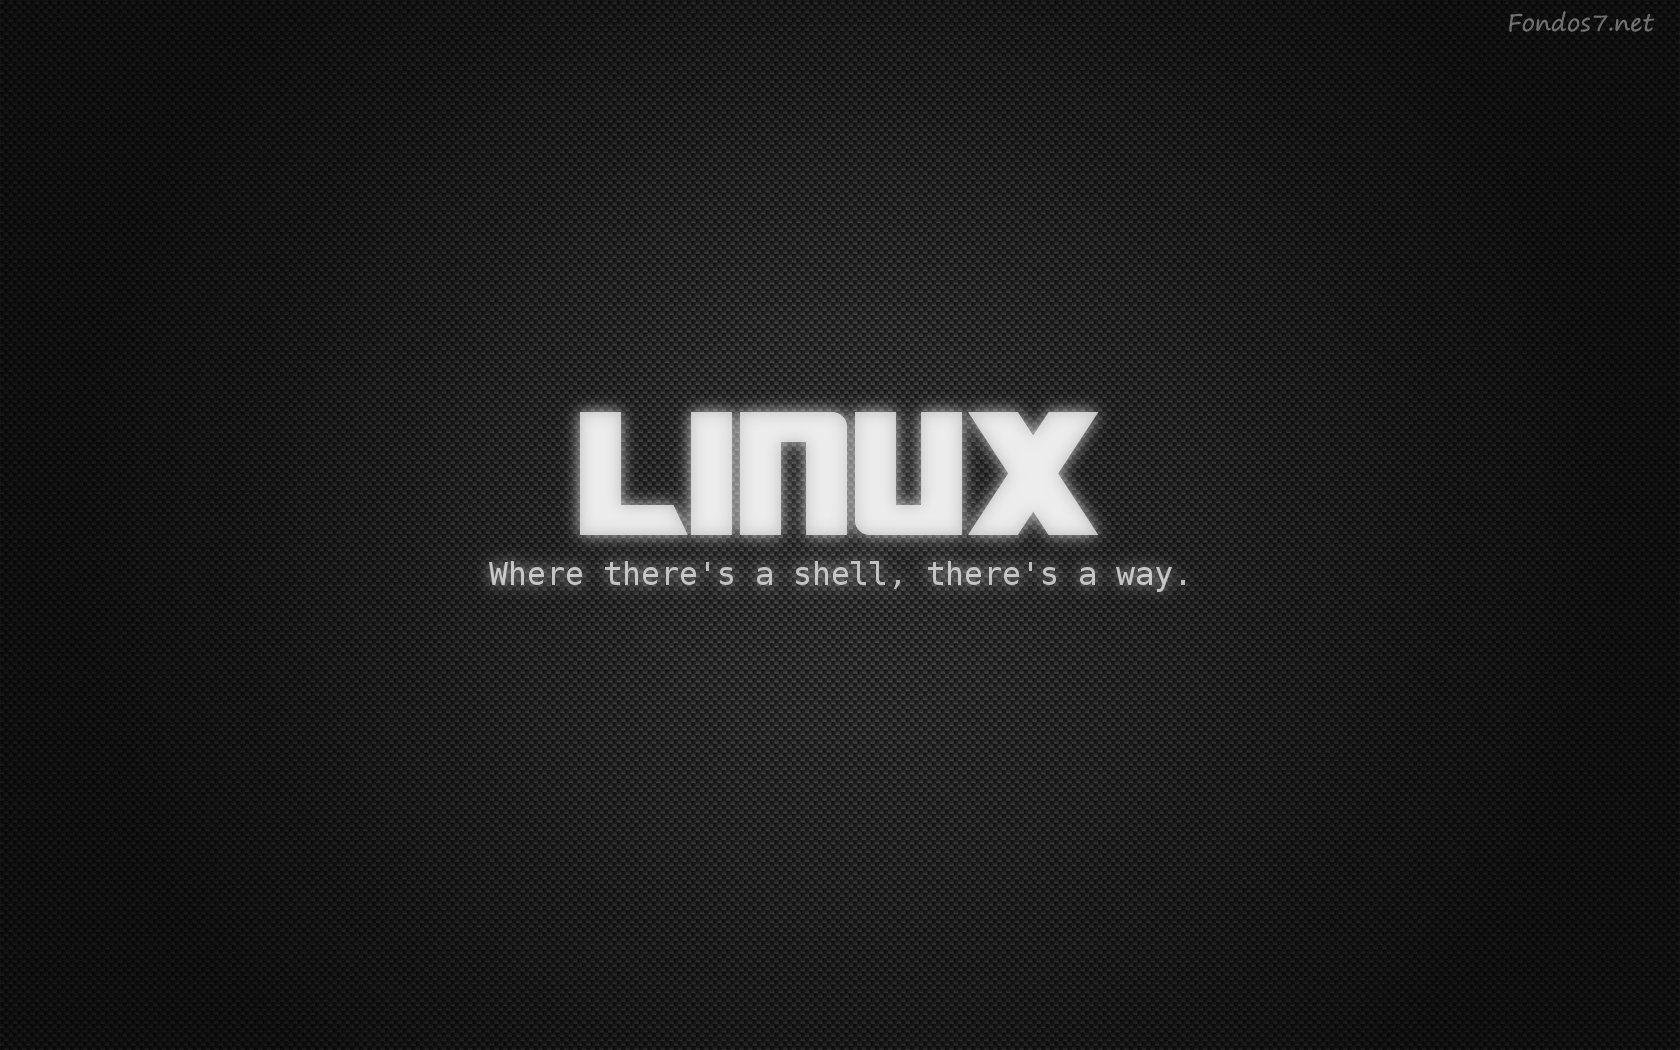  de pantalla linux shell wallpaper hd widescreen Gratis imagenes 5827 1680x1050